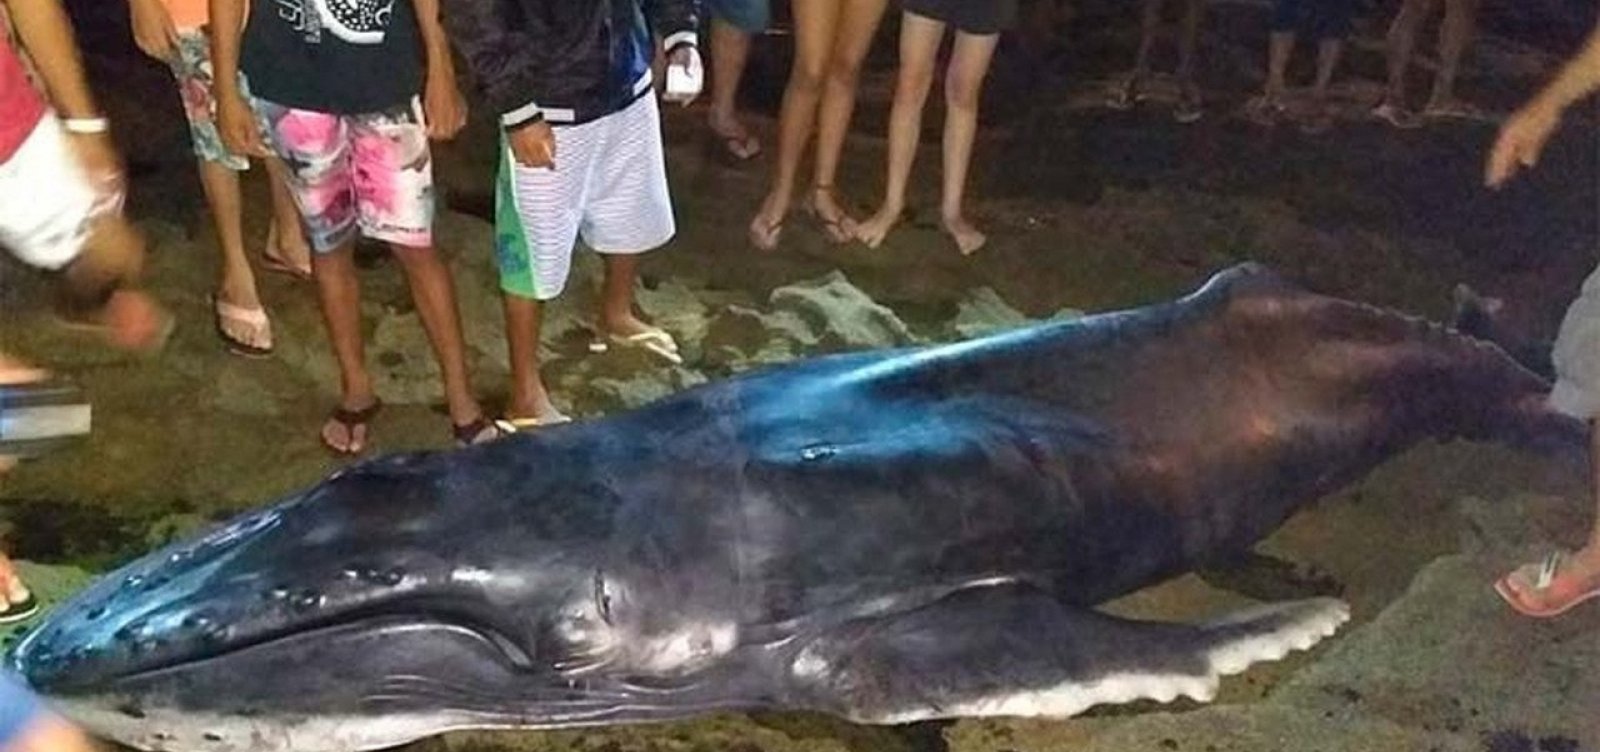 Filhote de baleia jubarte morre após encalhar no sul da Bahia